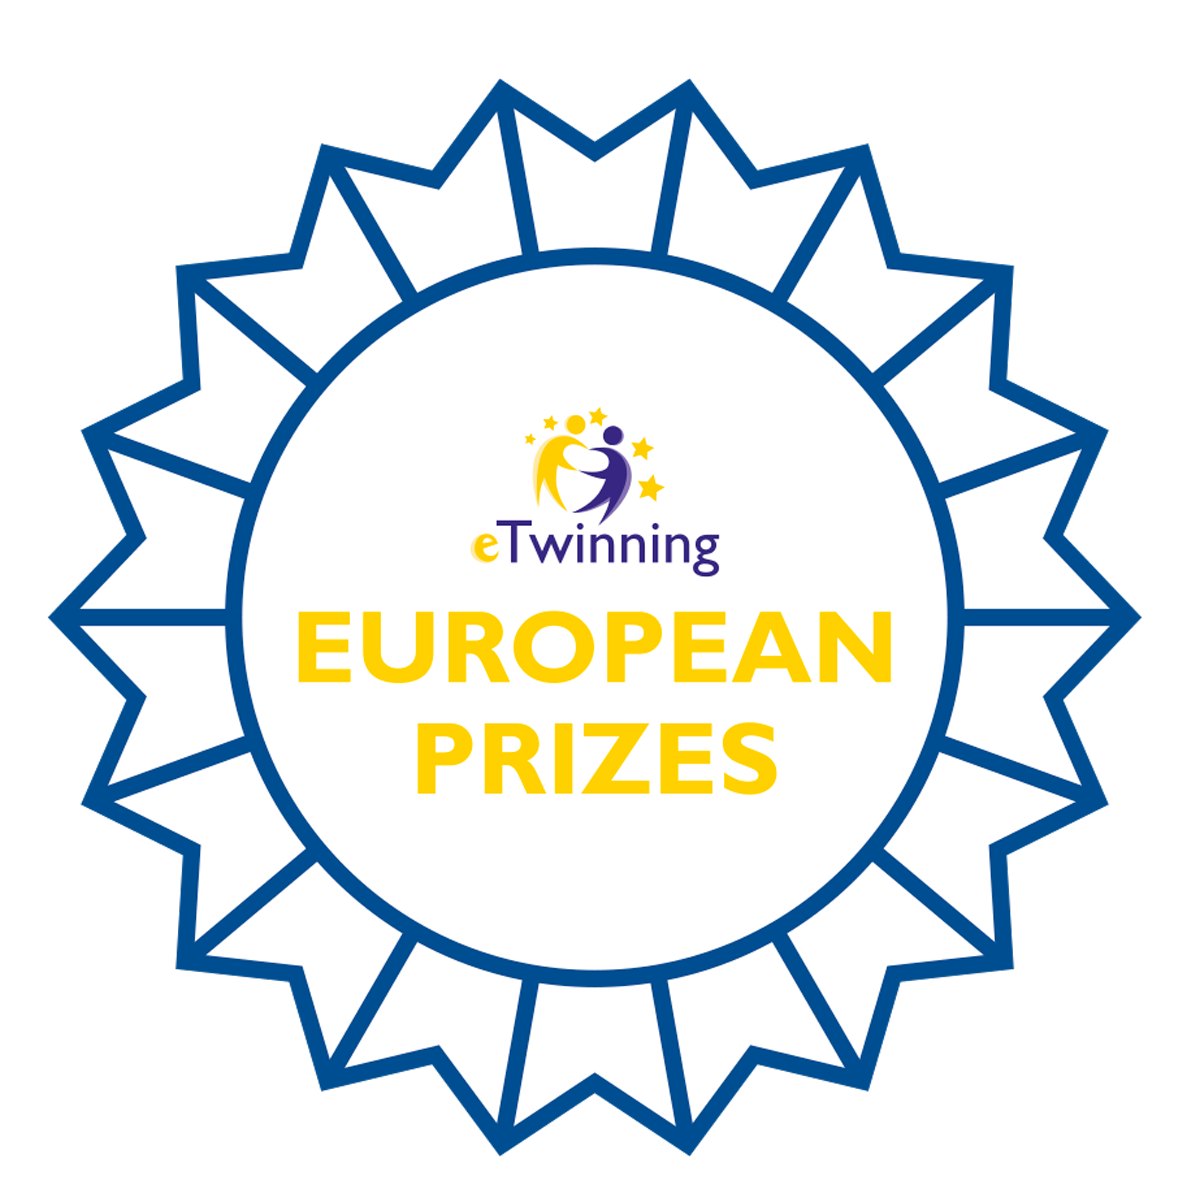 Ganadores de los Premios Europeos eTwinning 2020